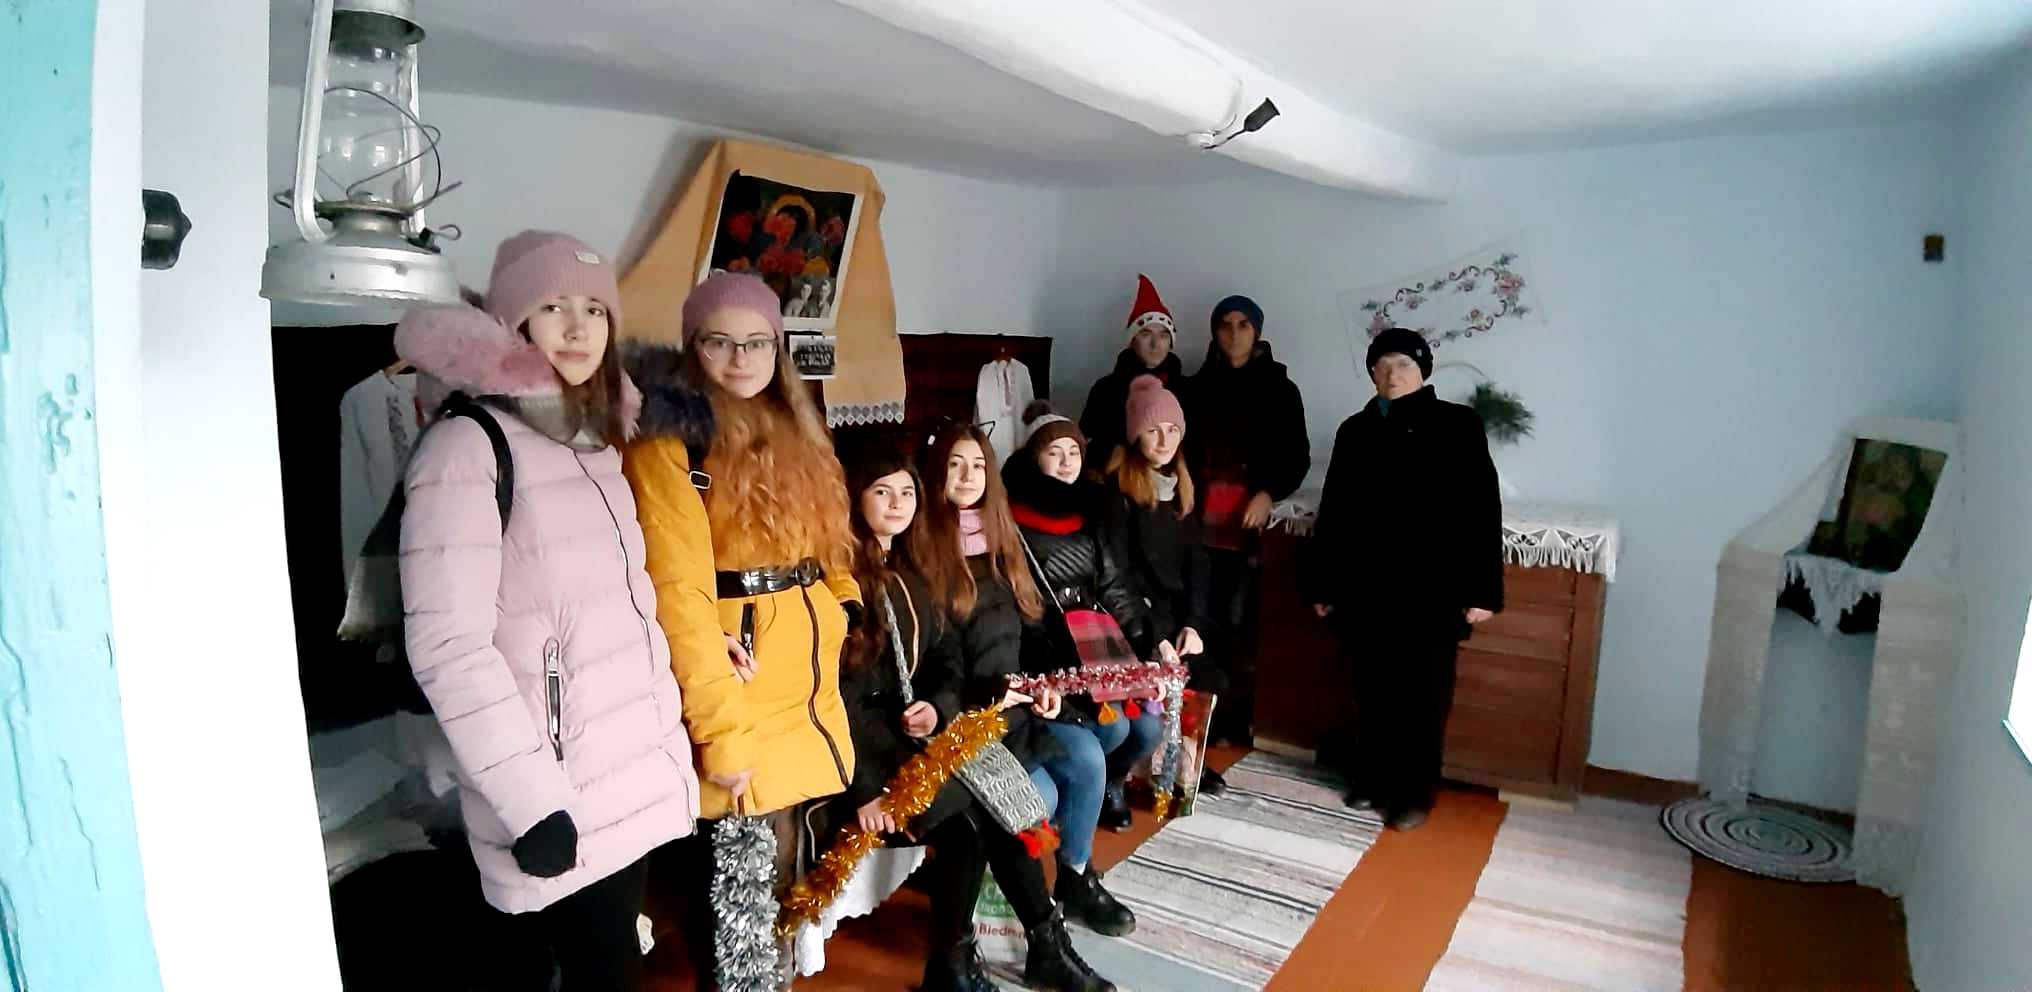 Начали новый год с добрых дел: в Болградском районе молодежь поздравляла одиноких людей